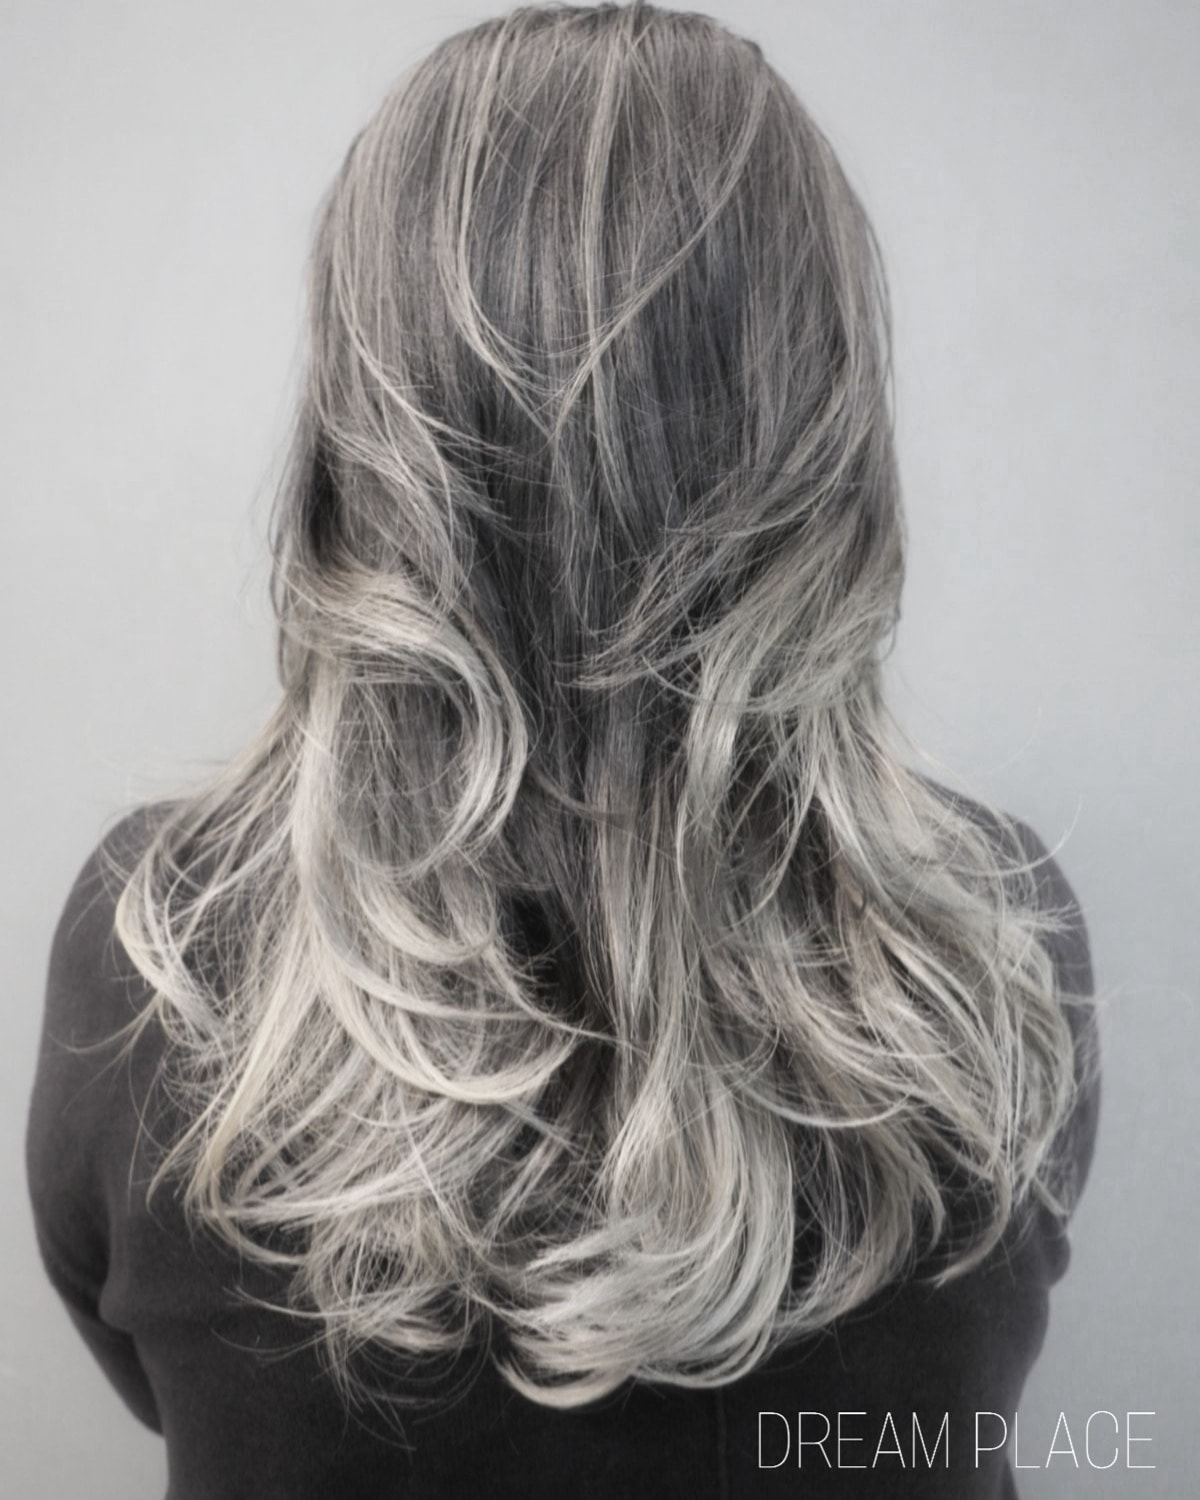 髮型作品參考:漸變灰色